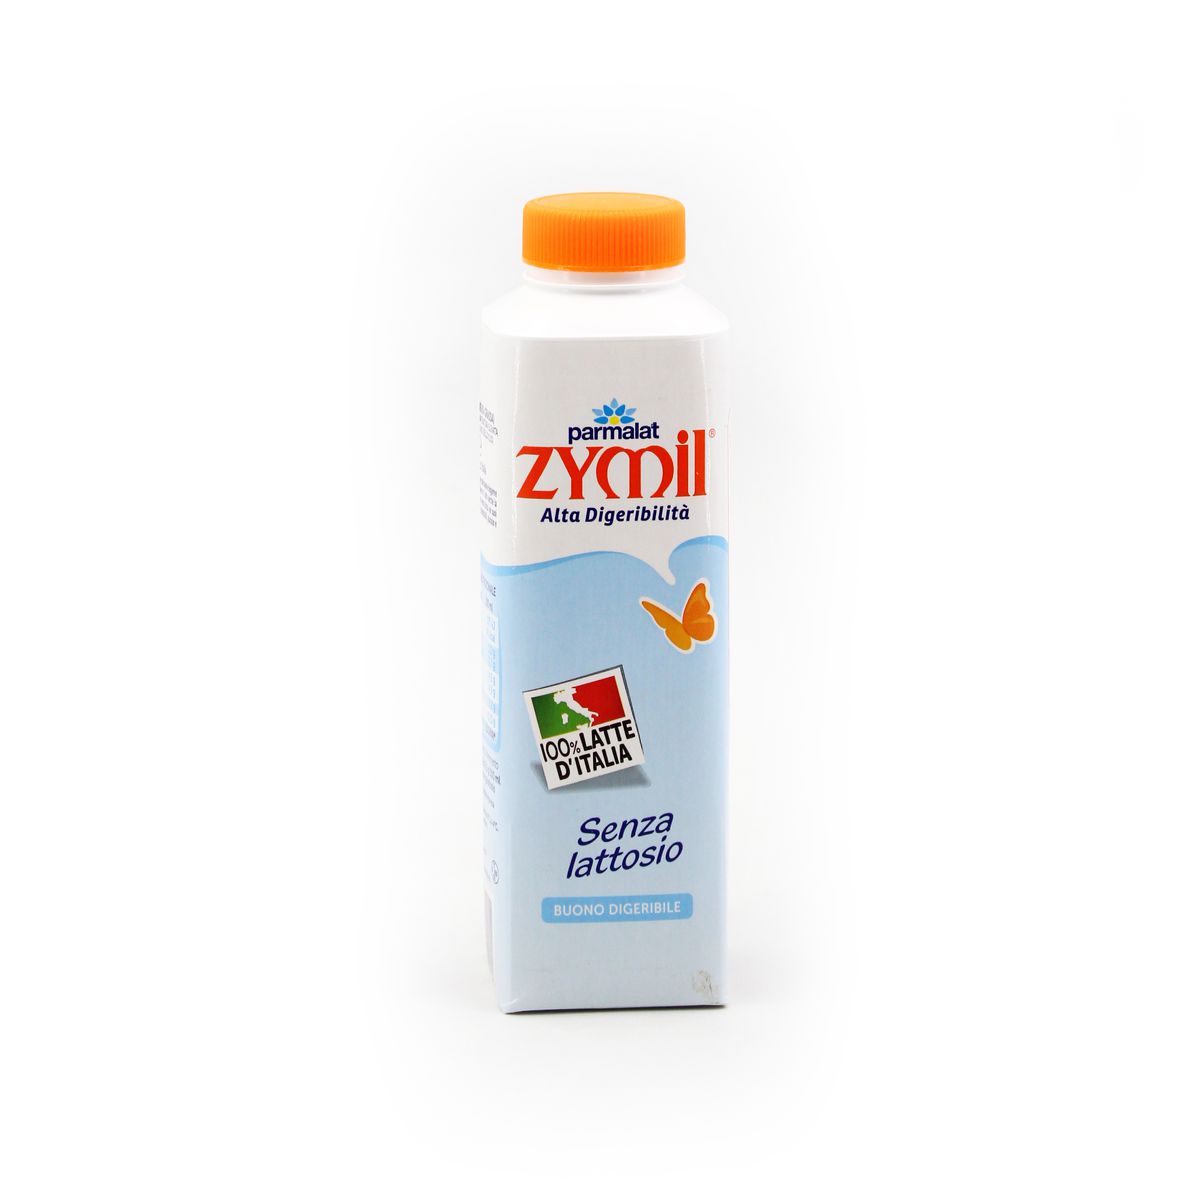 Parmalat Zymil Latte Senza Lattosio, Buono e Digeribile 0,5l